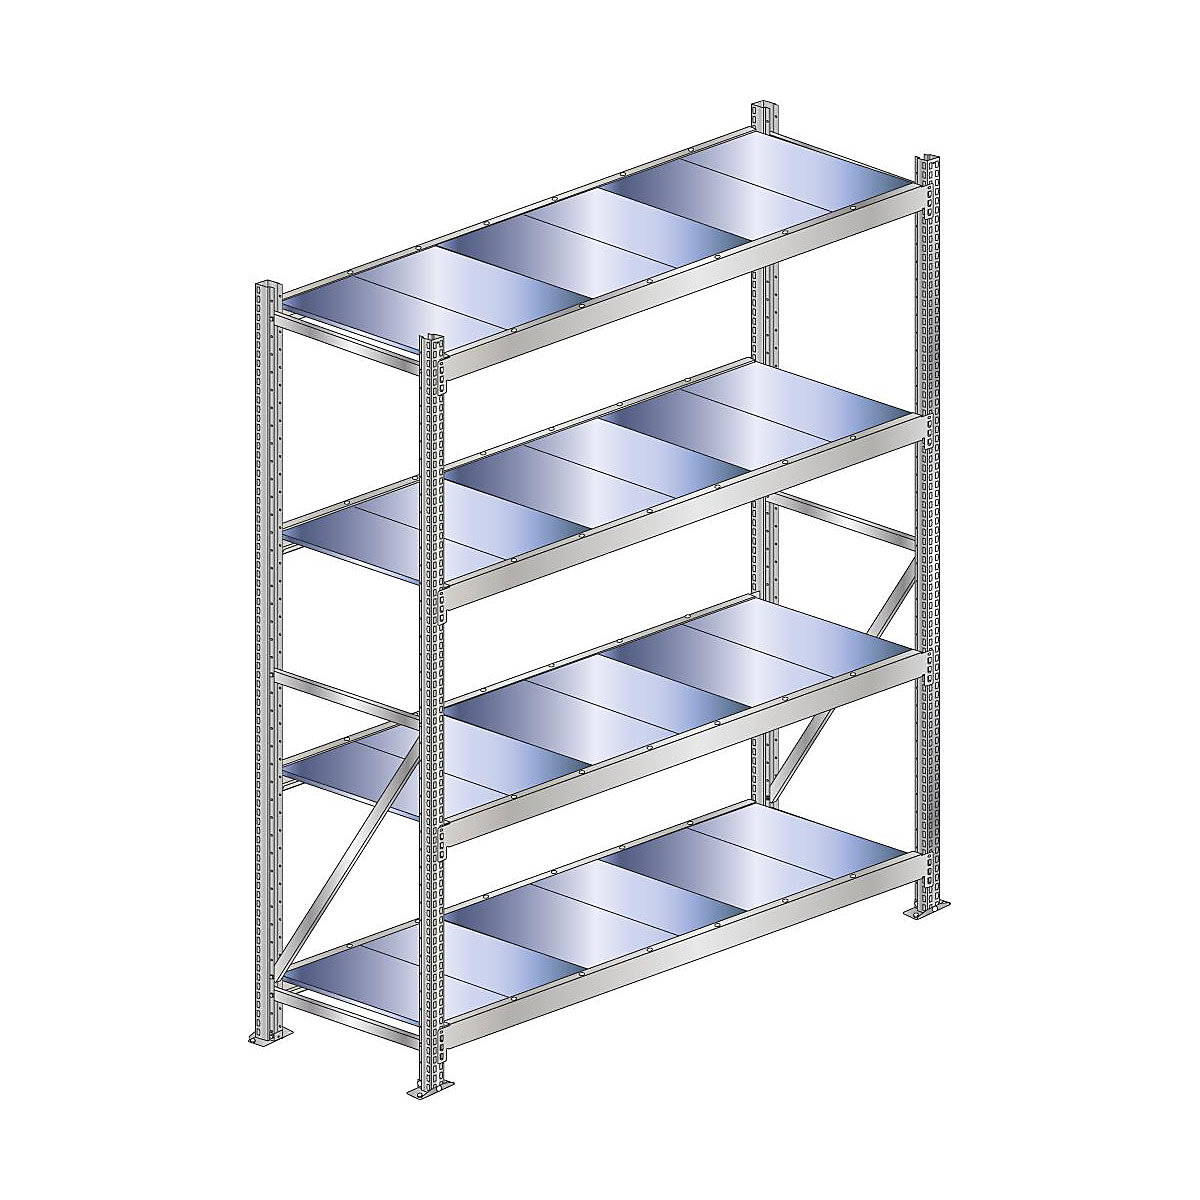 Wide span shelf unit, shelf load 500 kg – SCHULTE, shelf width 2000 mm, standard shelf unit, height 2500 mm, depth 500 mm